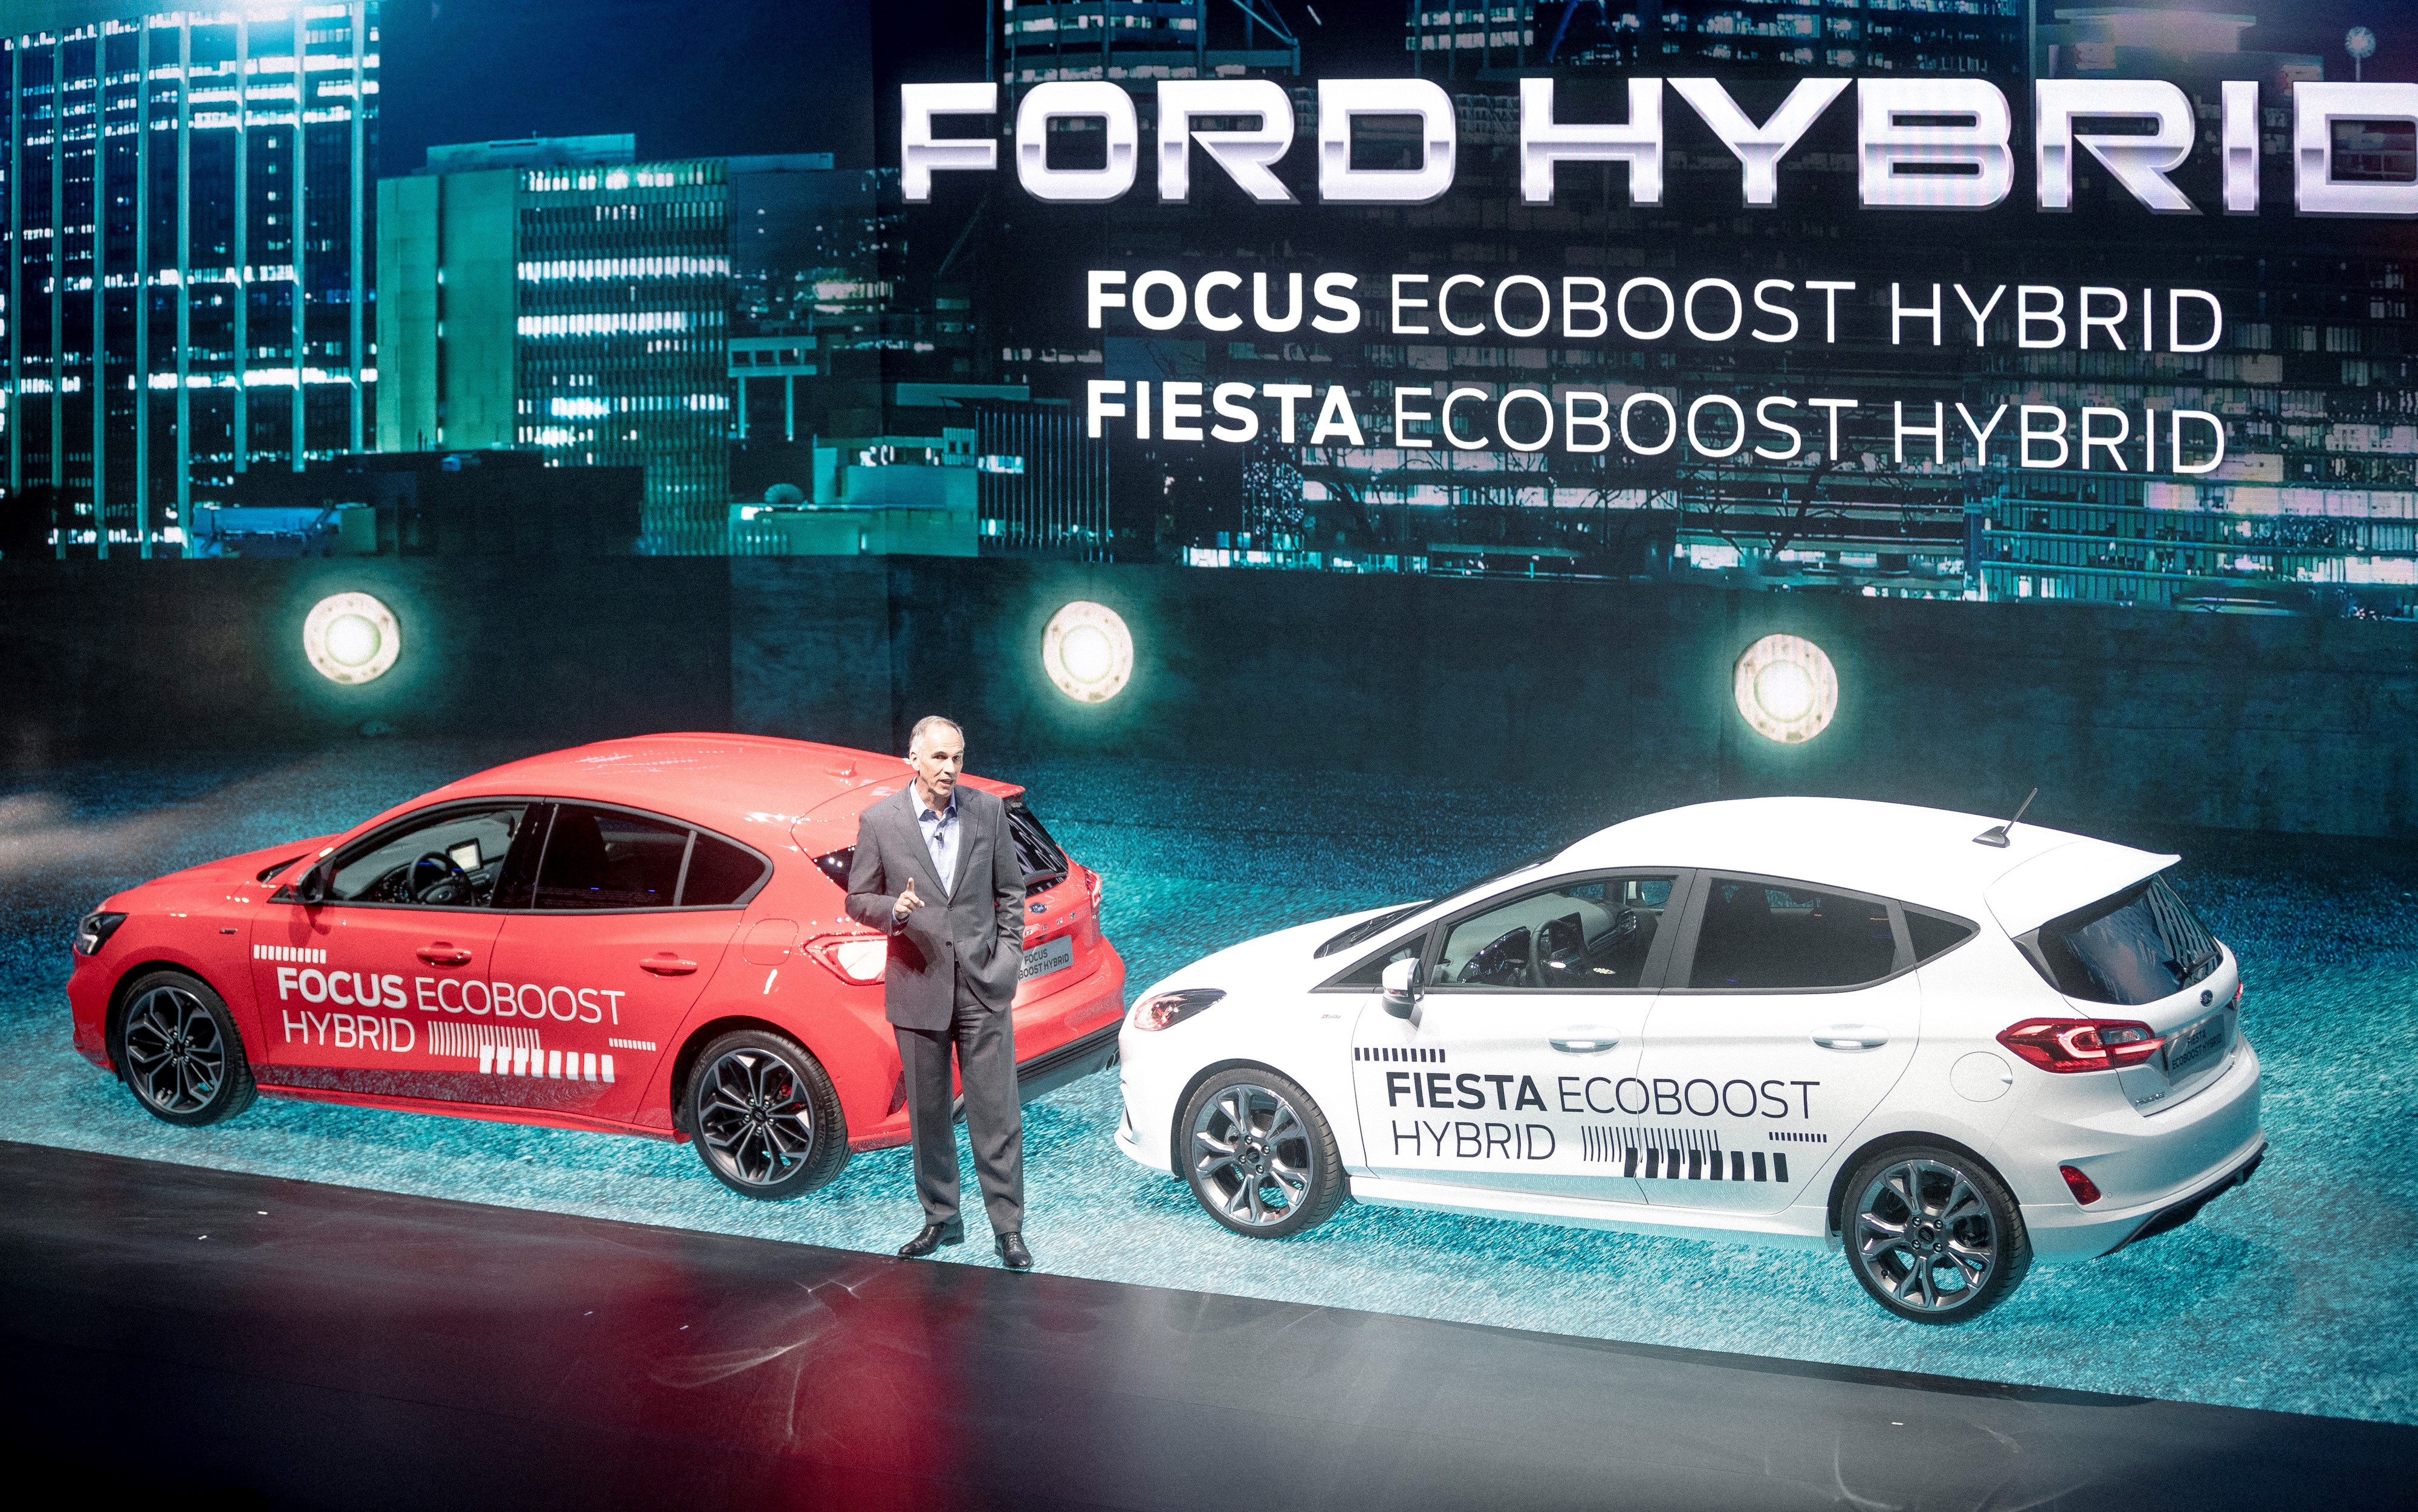 Ford je predstavil paleto novih elektrificiranih vozil